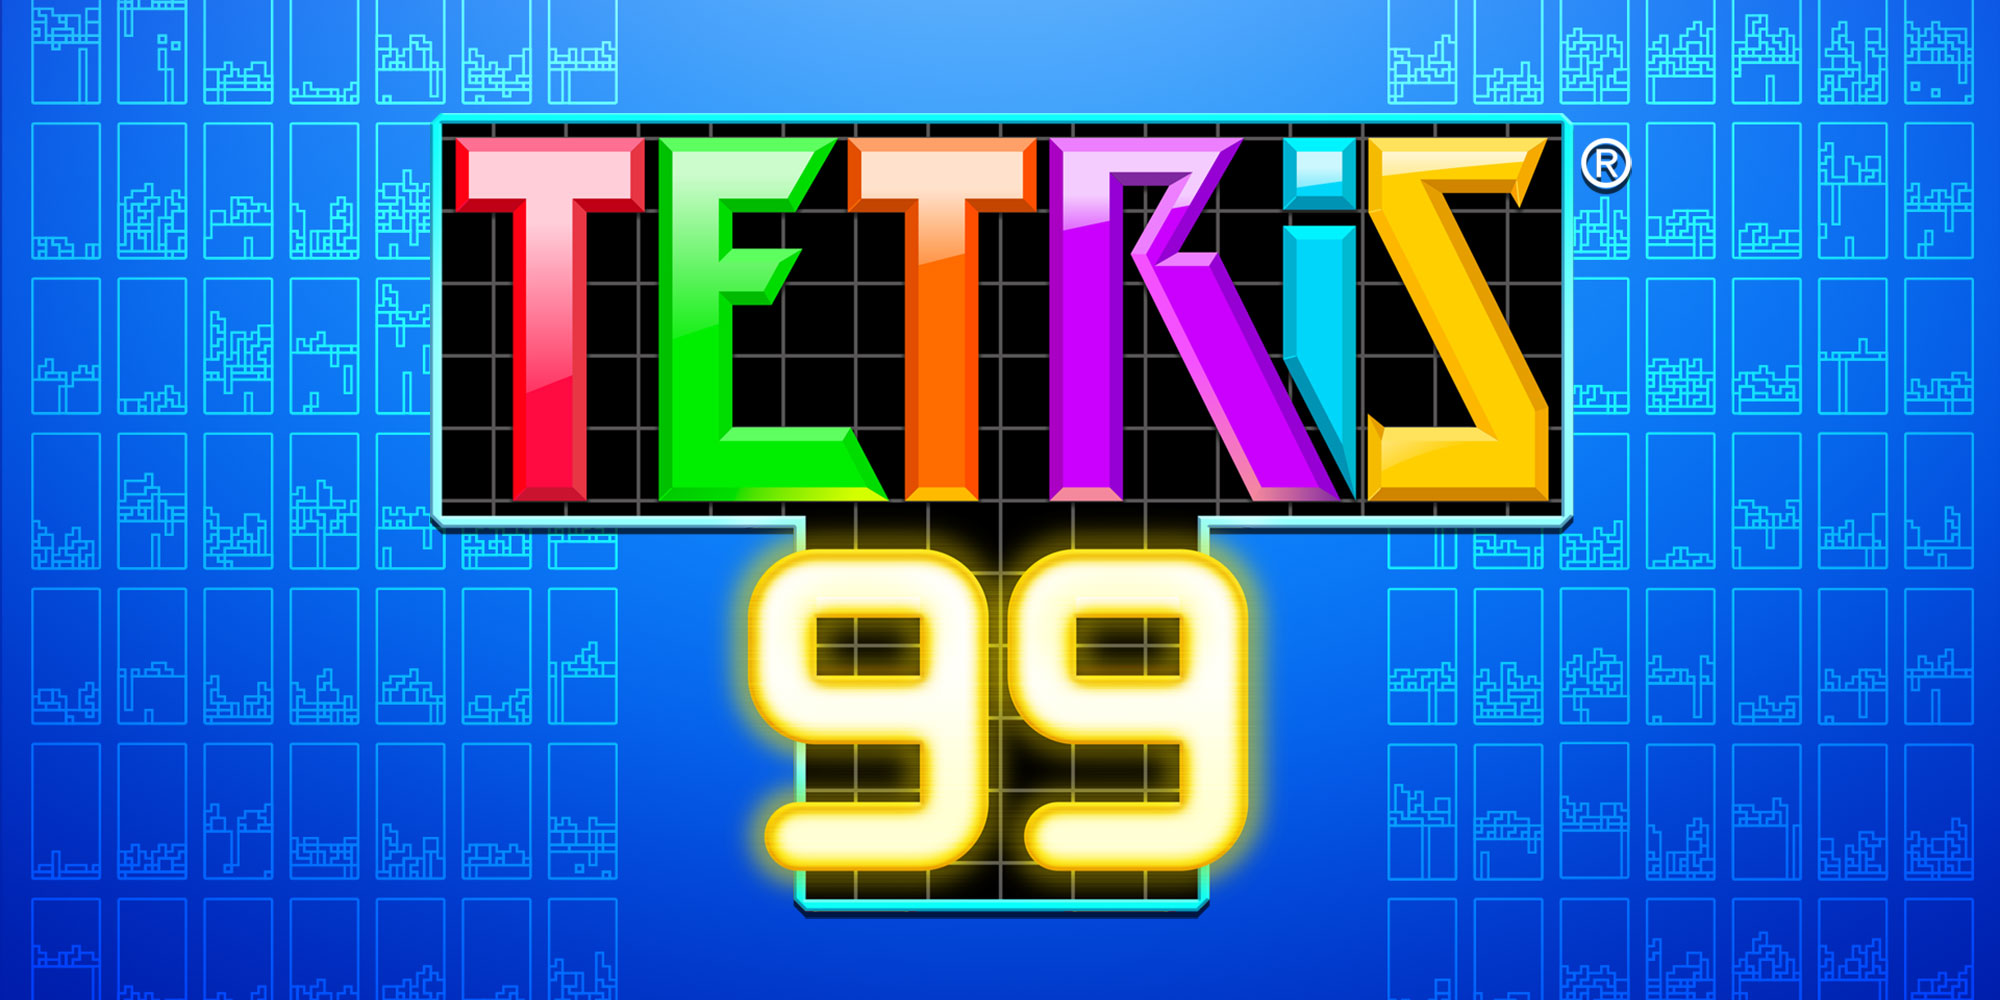 tetris 99 wii u